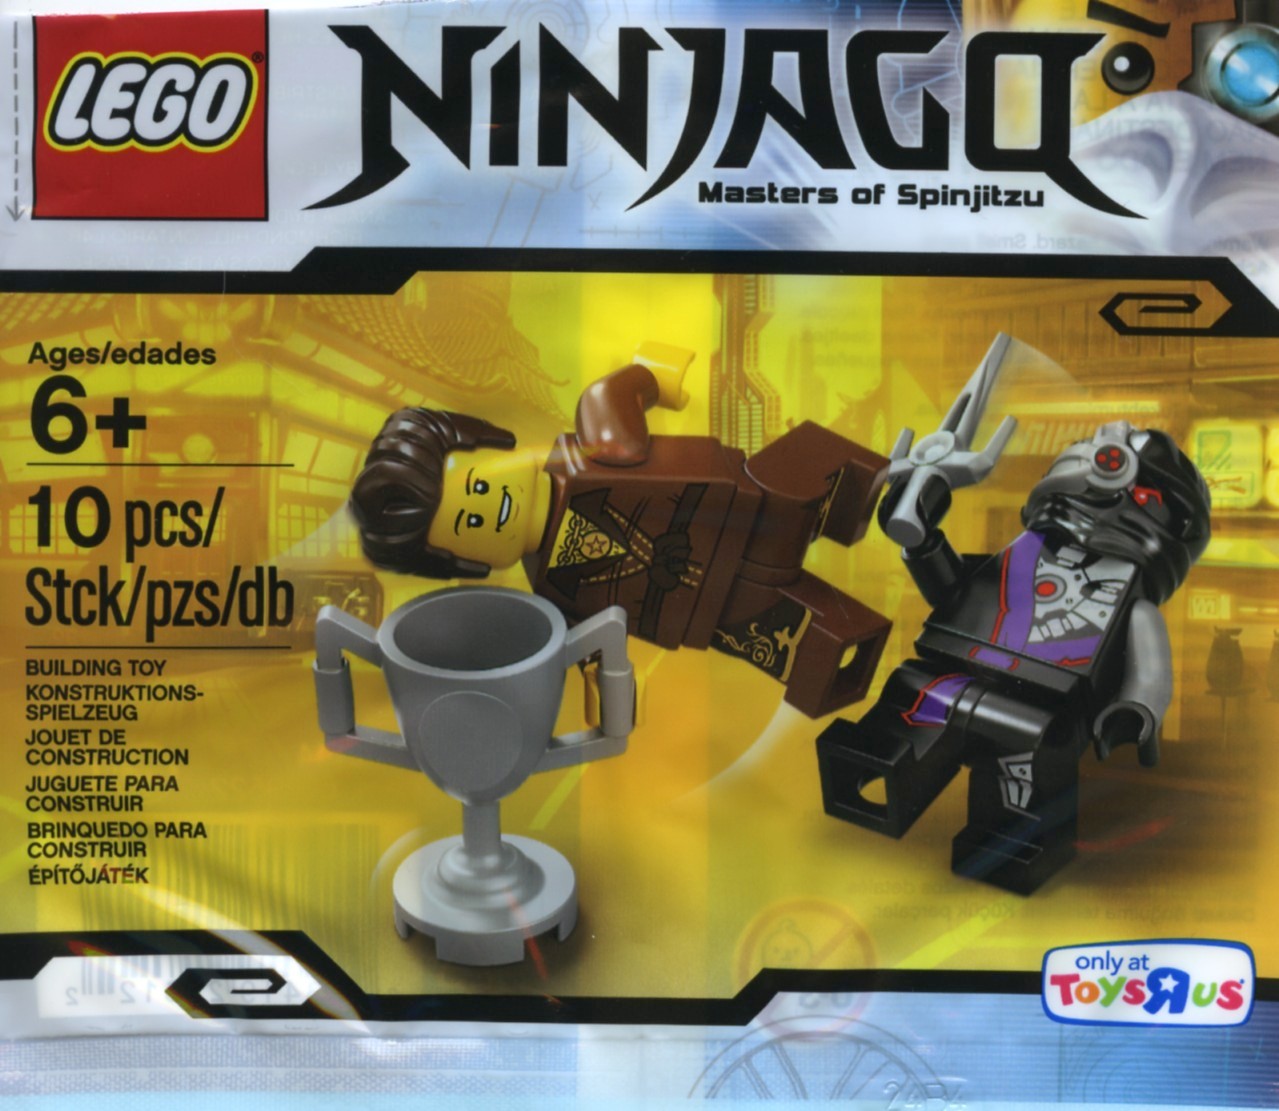 Ninjago | Brickset: LEGO set guide and database